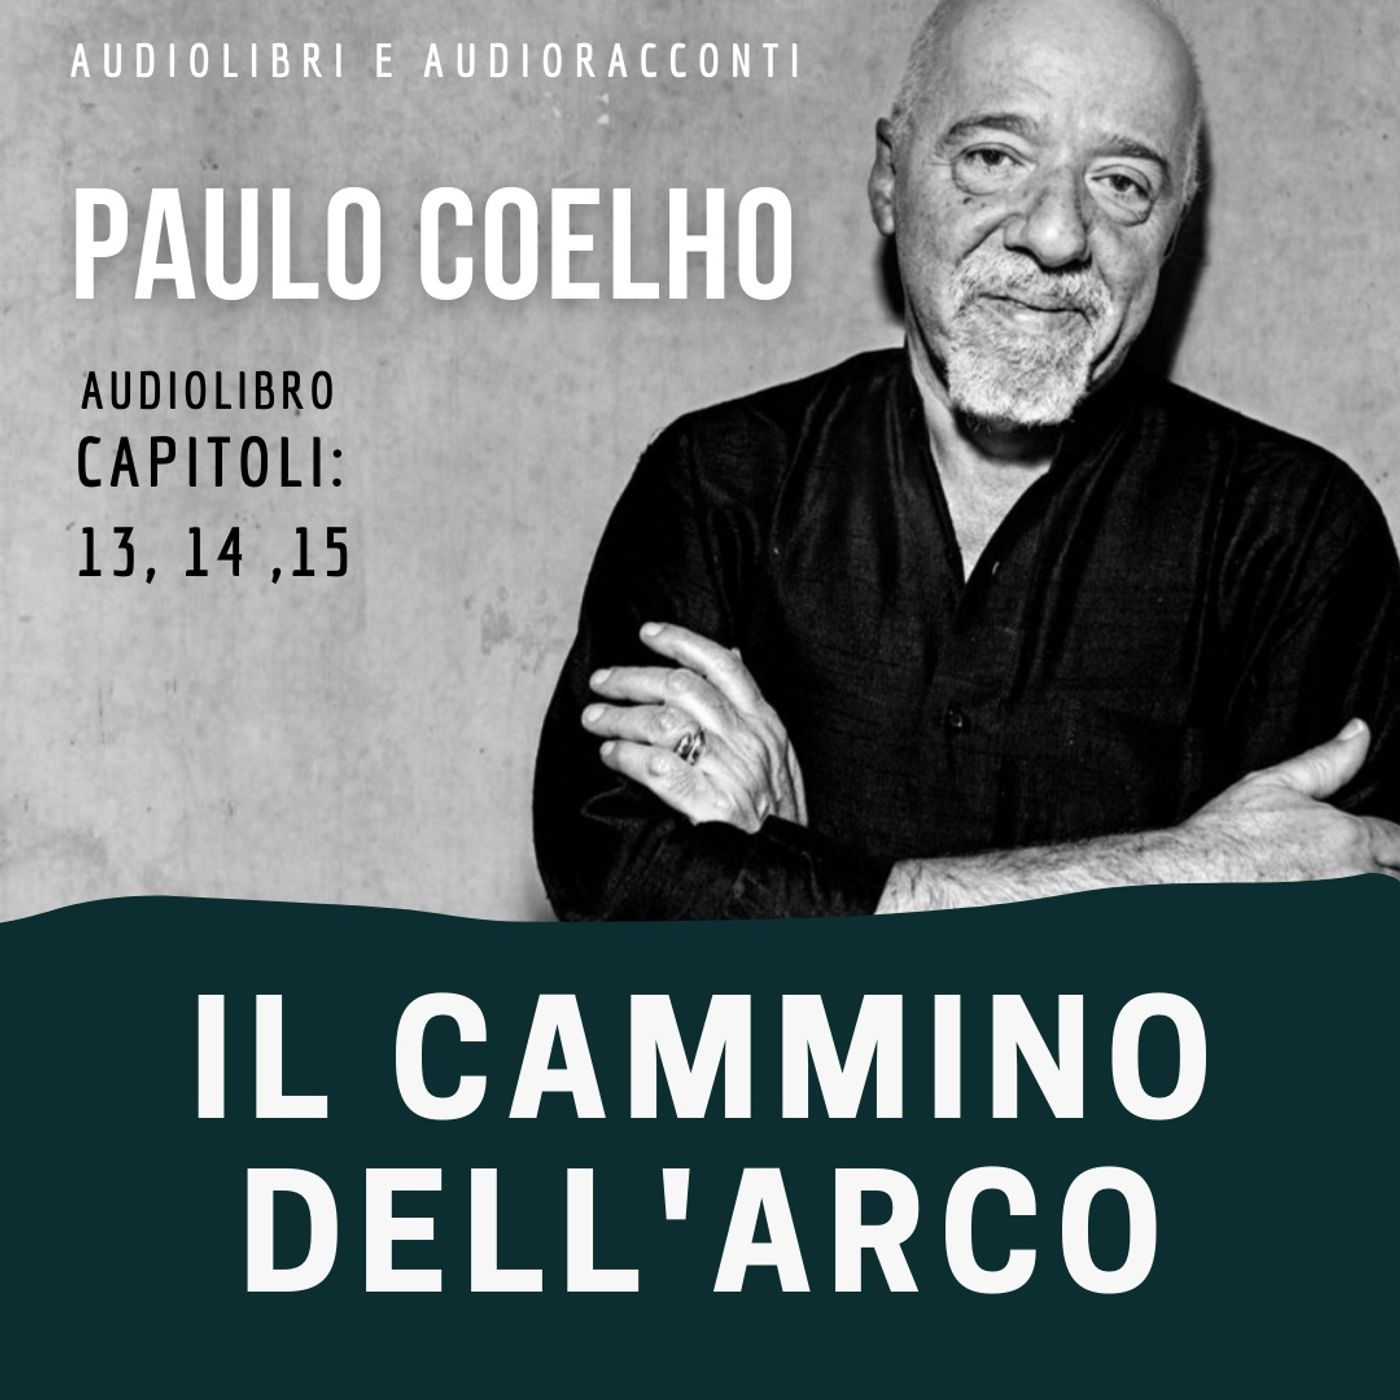 Il cammino dell'arco di Paulo Coelho [capitoli 13, 14, 15] - Audiolibro